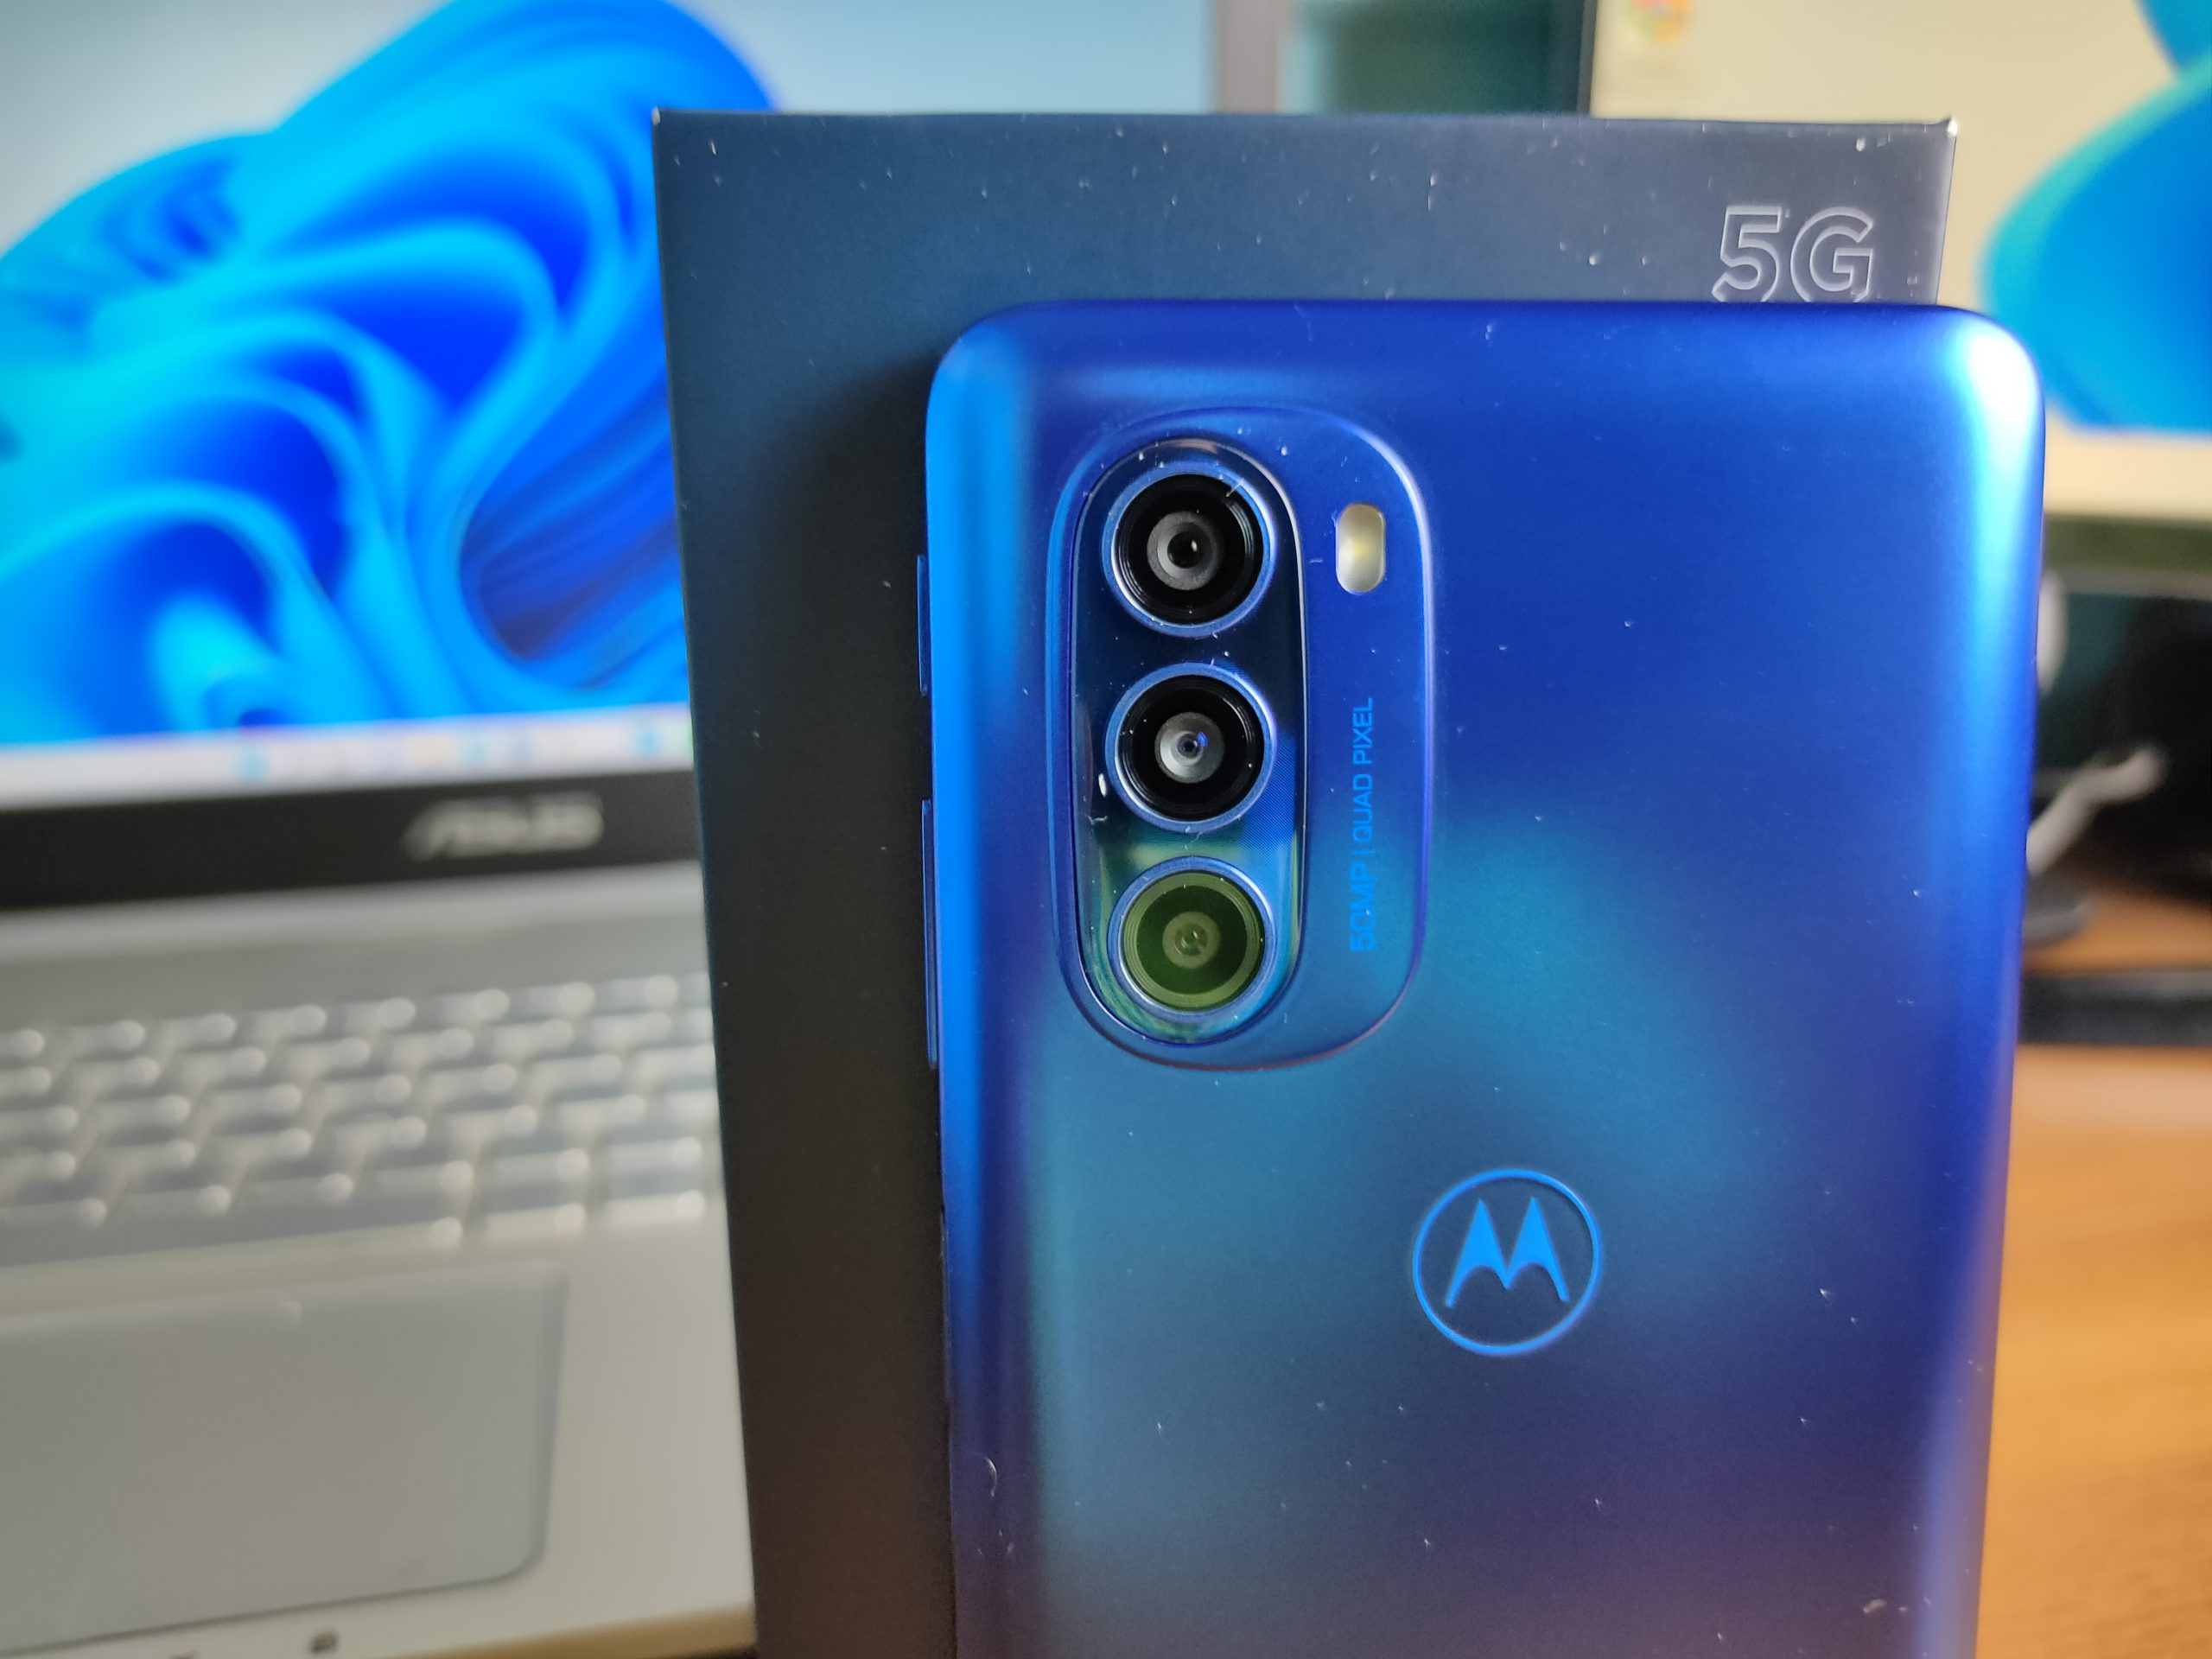 IMG20220401222008 scaled - Motorola Moto G51 5g recensione